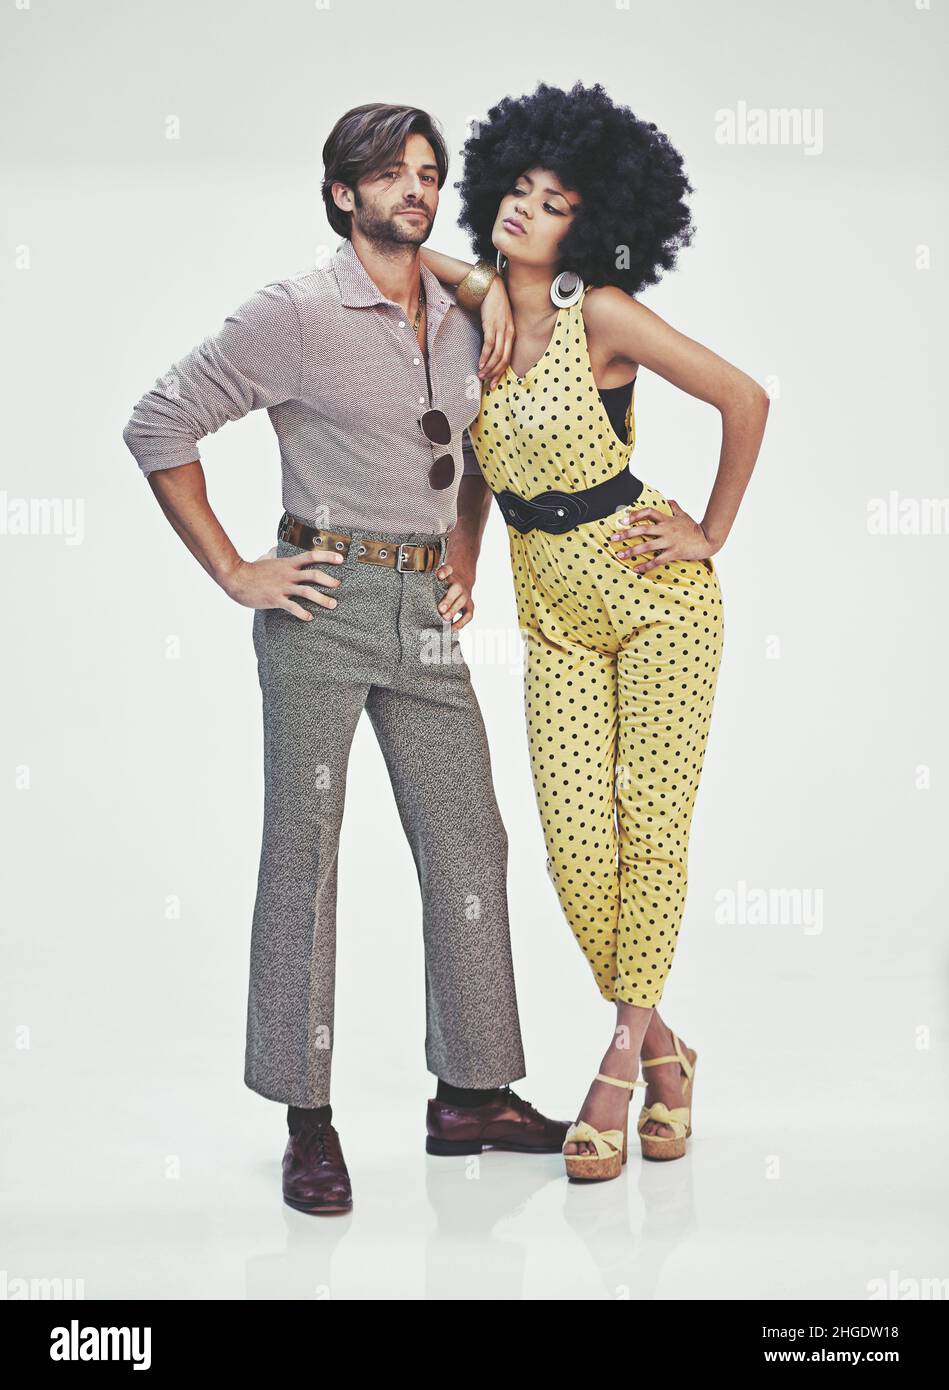 Una atractiva pareja joven de pie juntos ropa retro 70s Fotografía de - Alamy